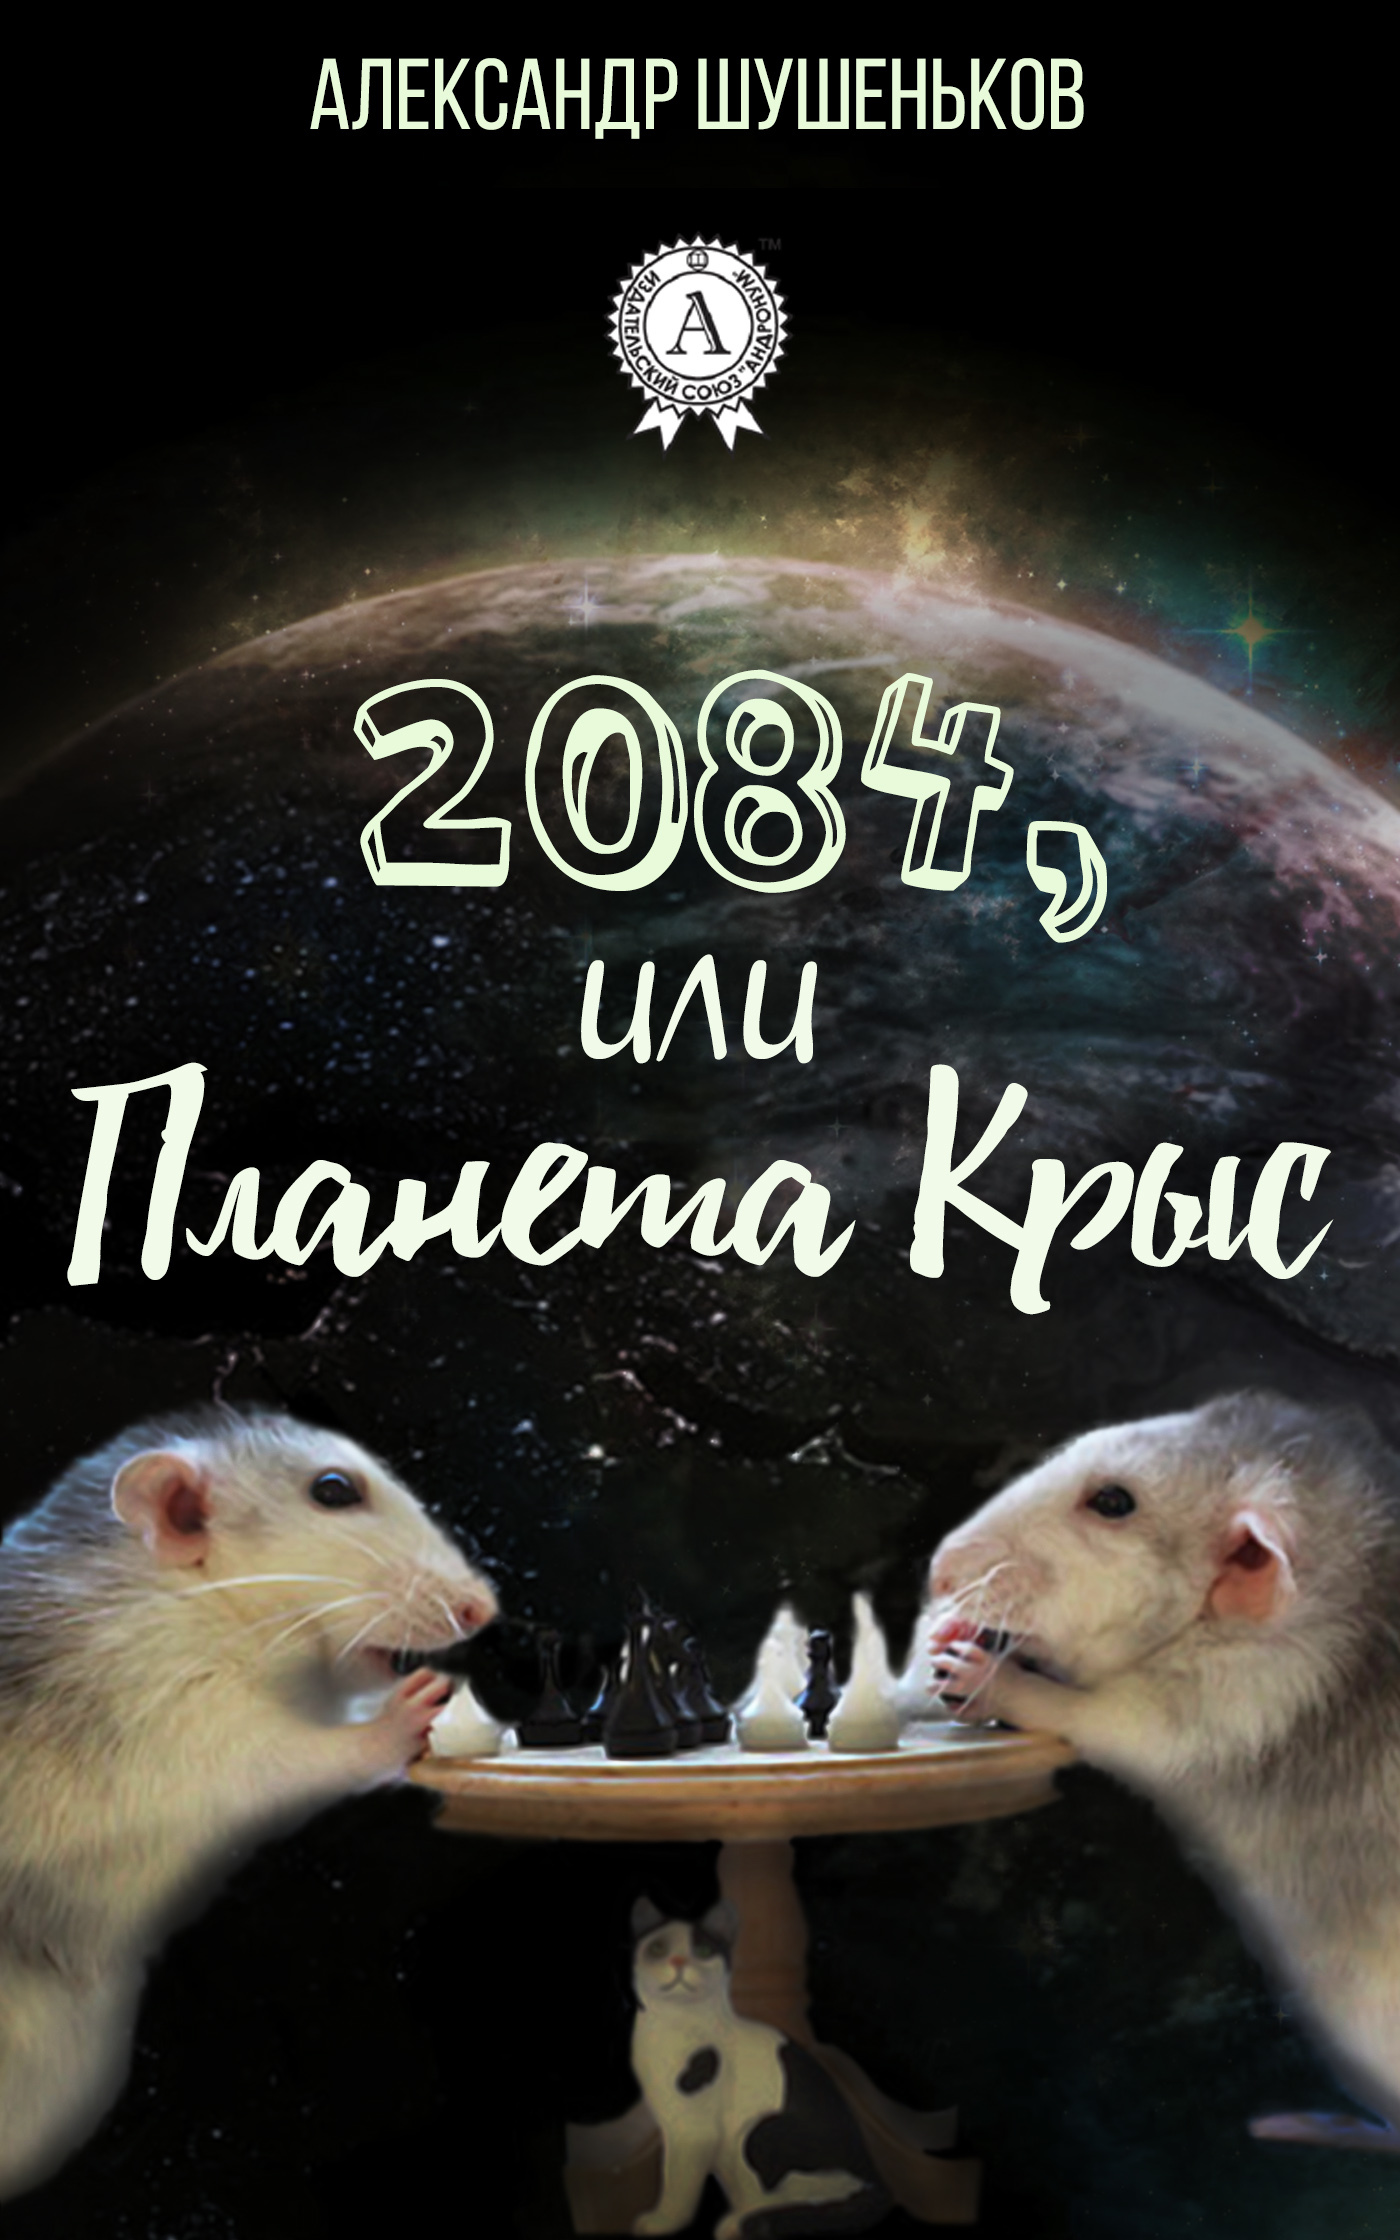 Скачать 2084, или Планета крыс быстро